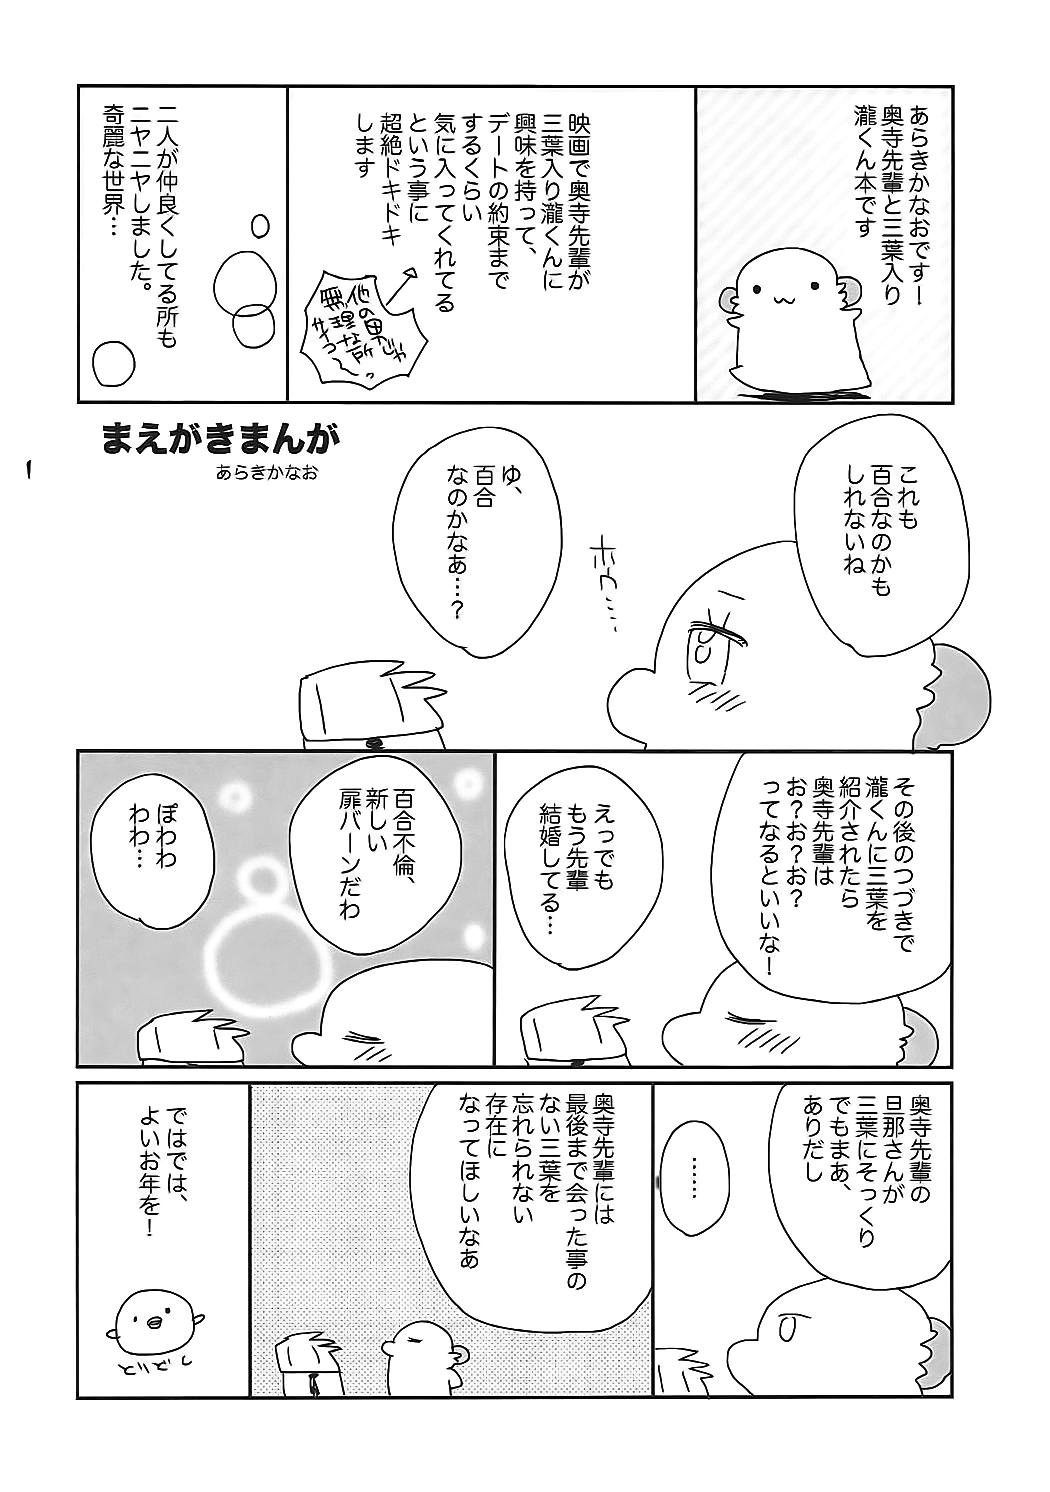 Gordibuena Okudera-senpai wa Shiranai - Kimi no na wa. Street - Page 3